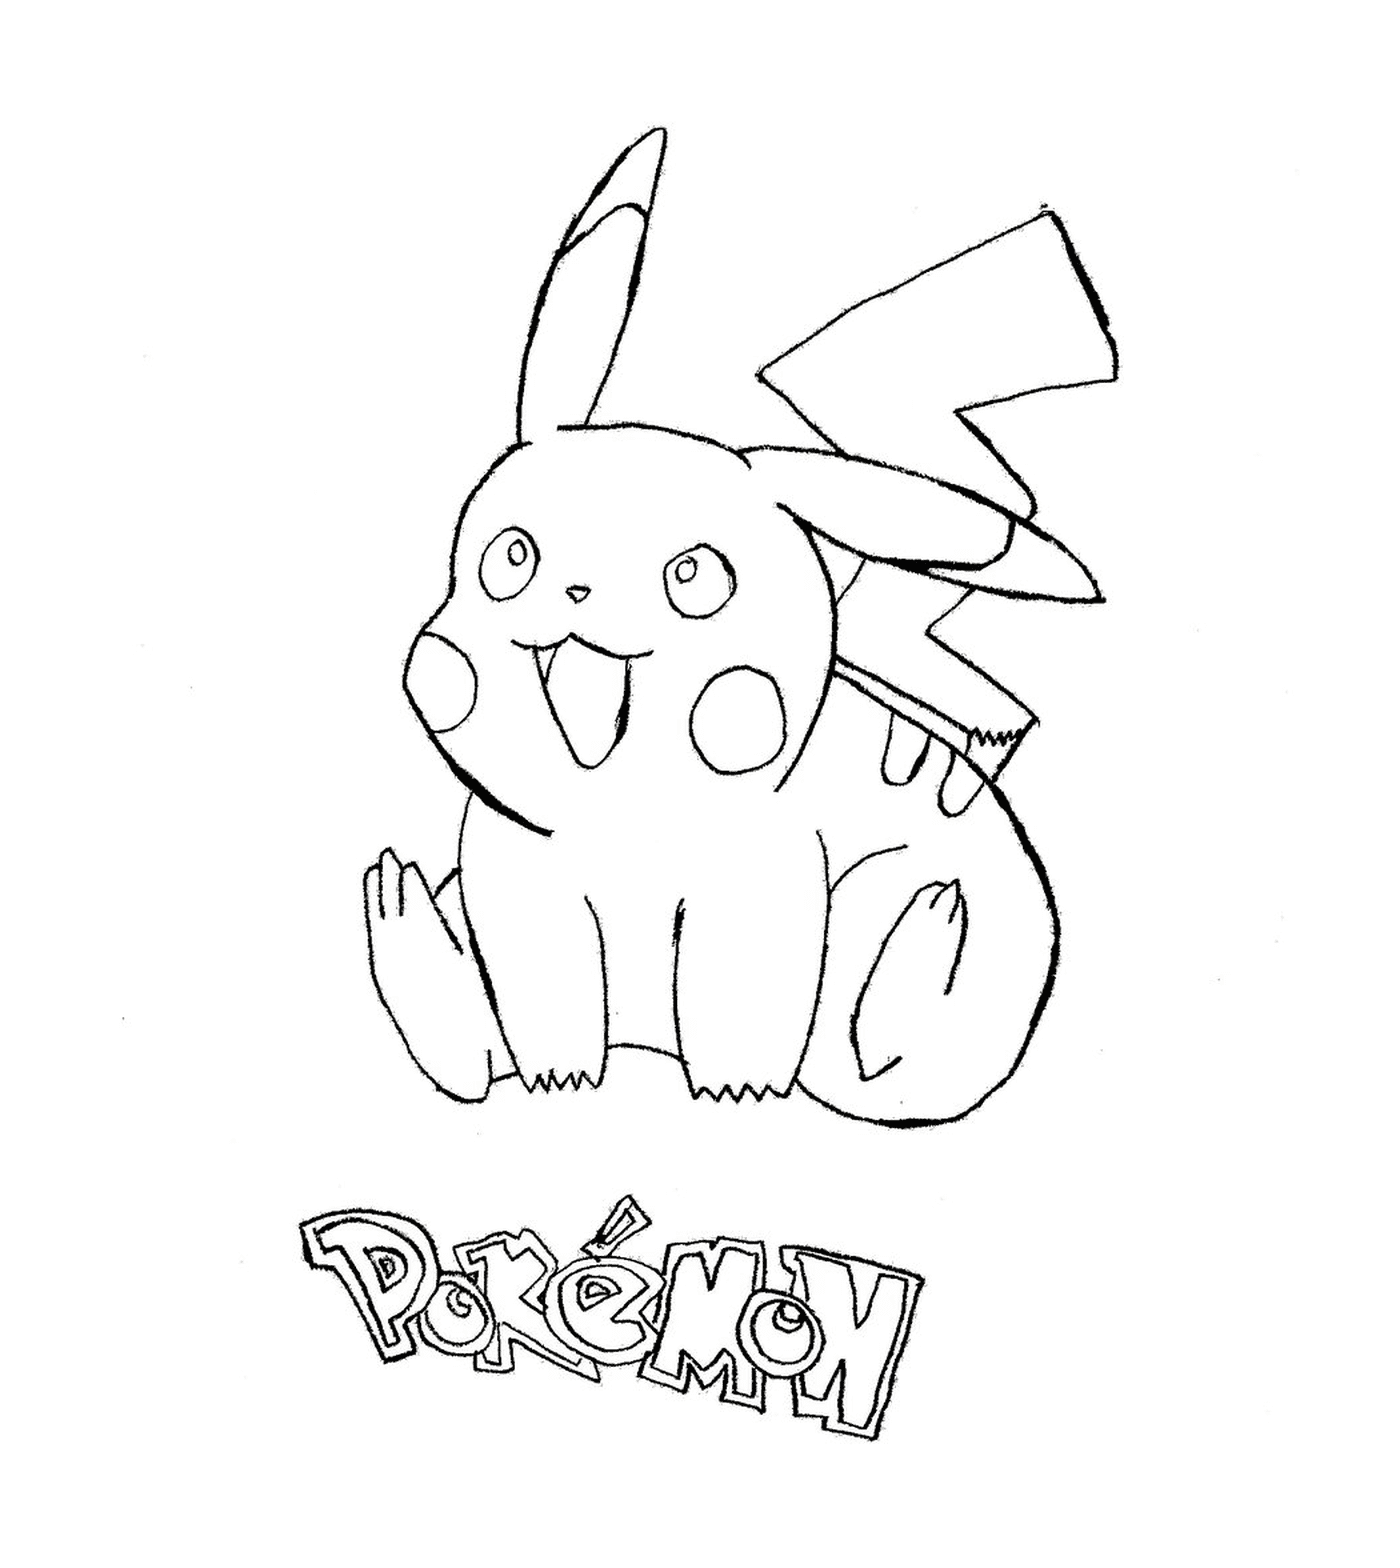  Pikachu, a lovely Pokémon 